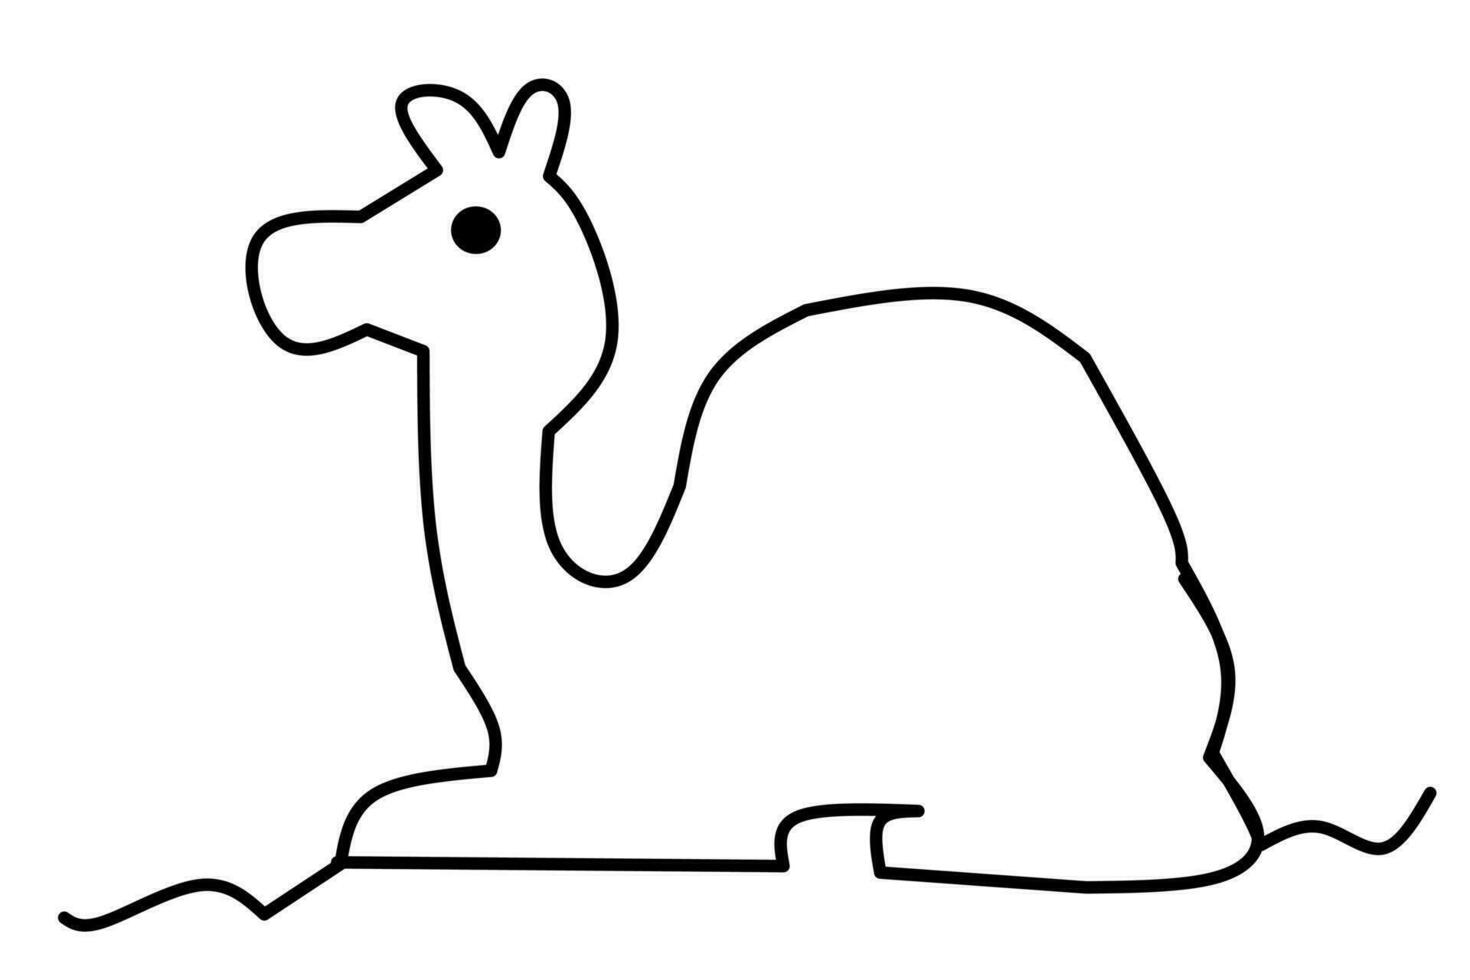 kamel linje teckning isolerat på vit bakgrund. vektor illustration.